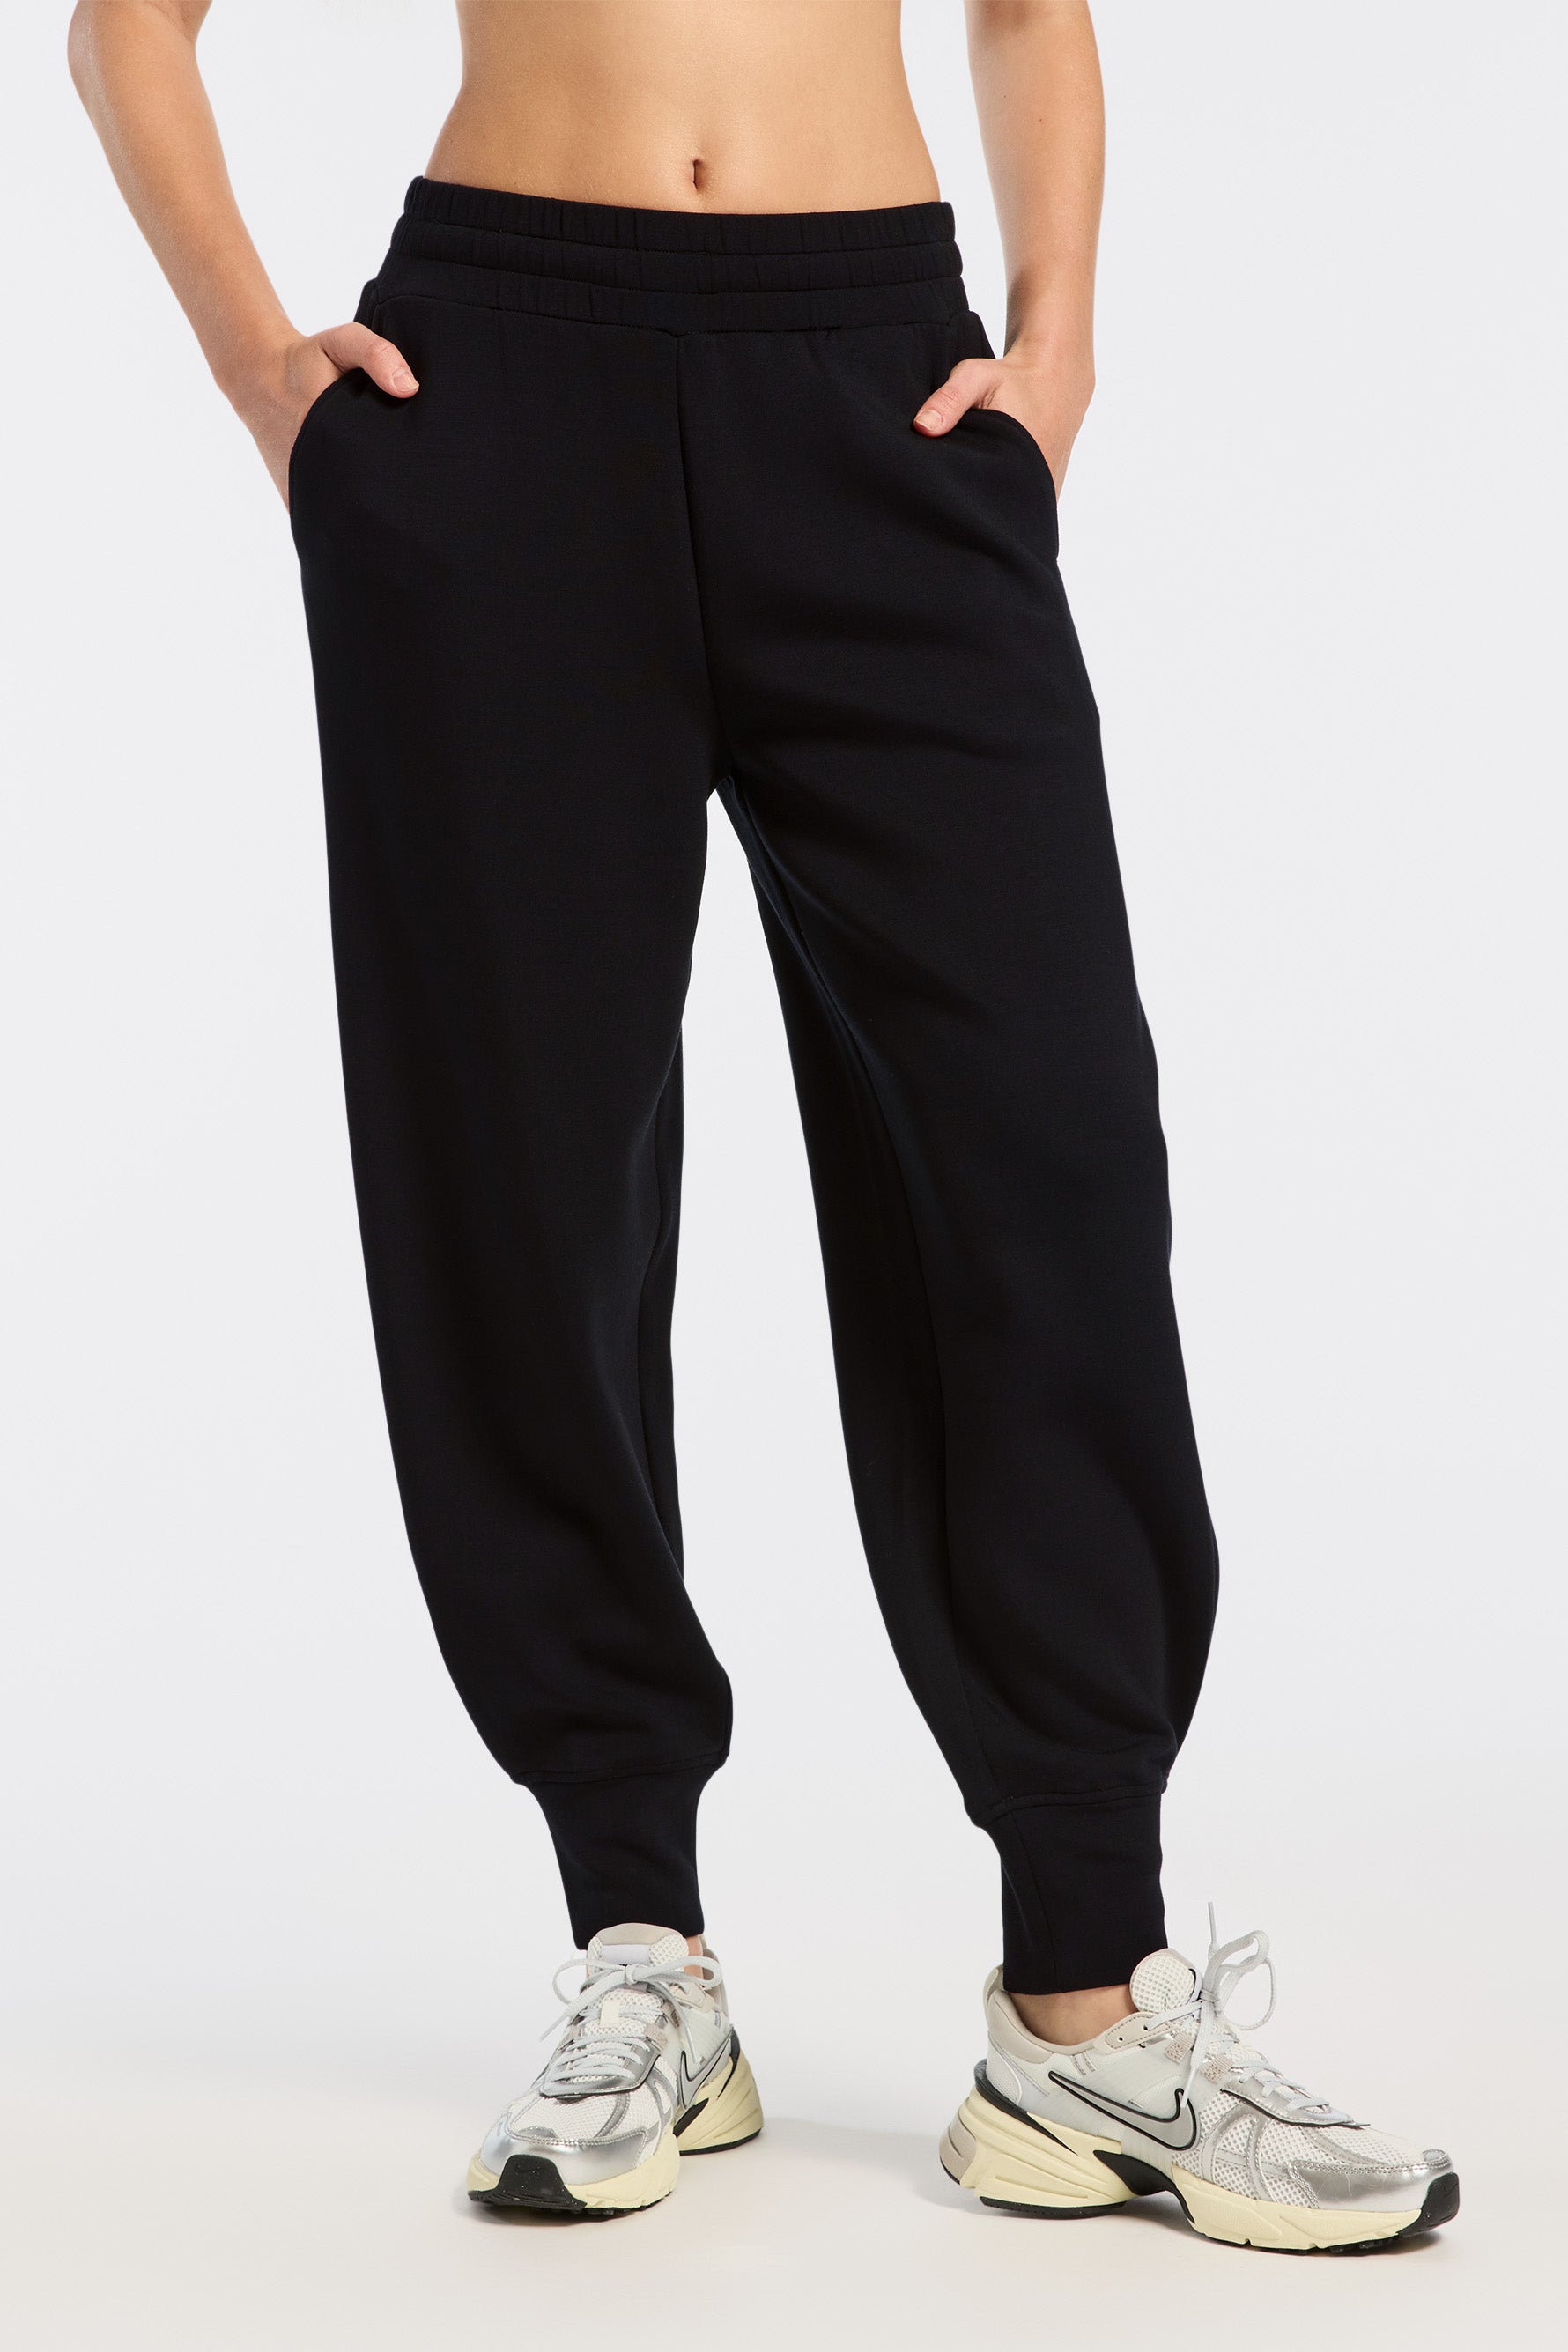 ballaholic TSC Long Pants Lサイズ - ウェア